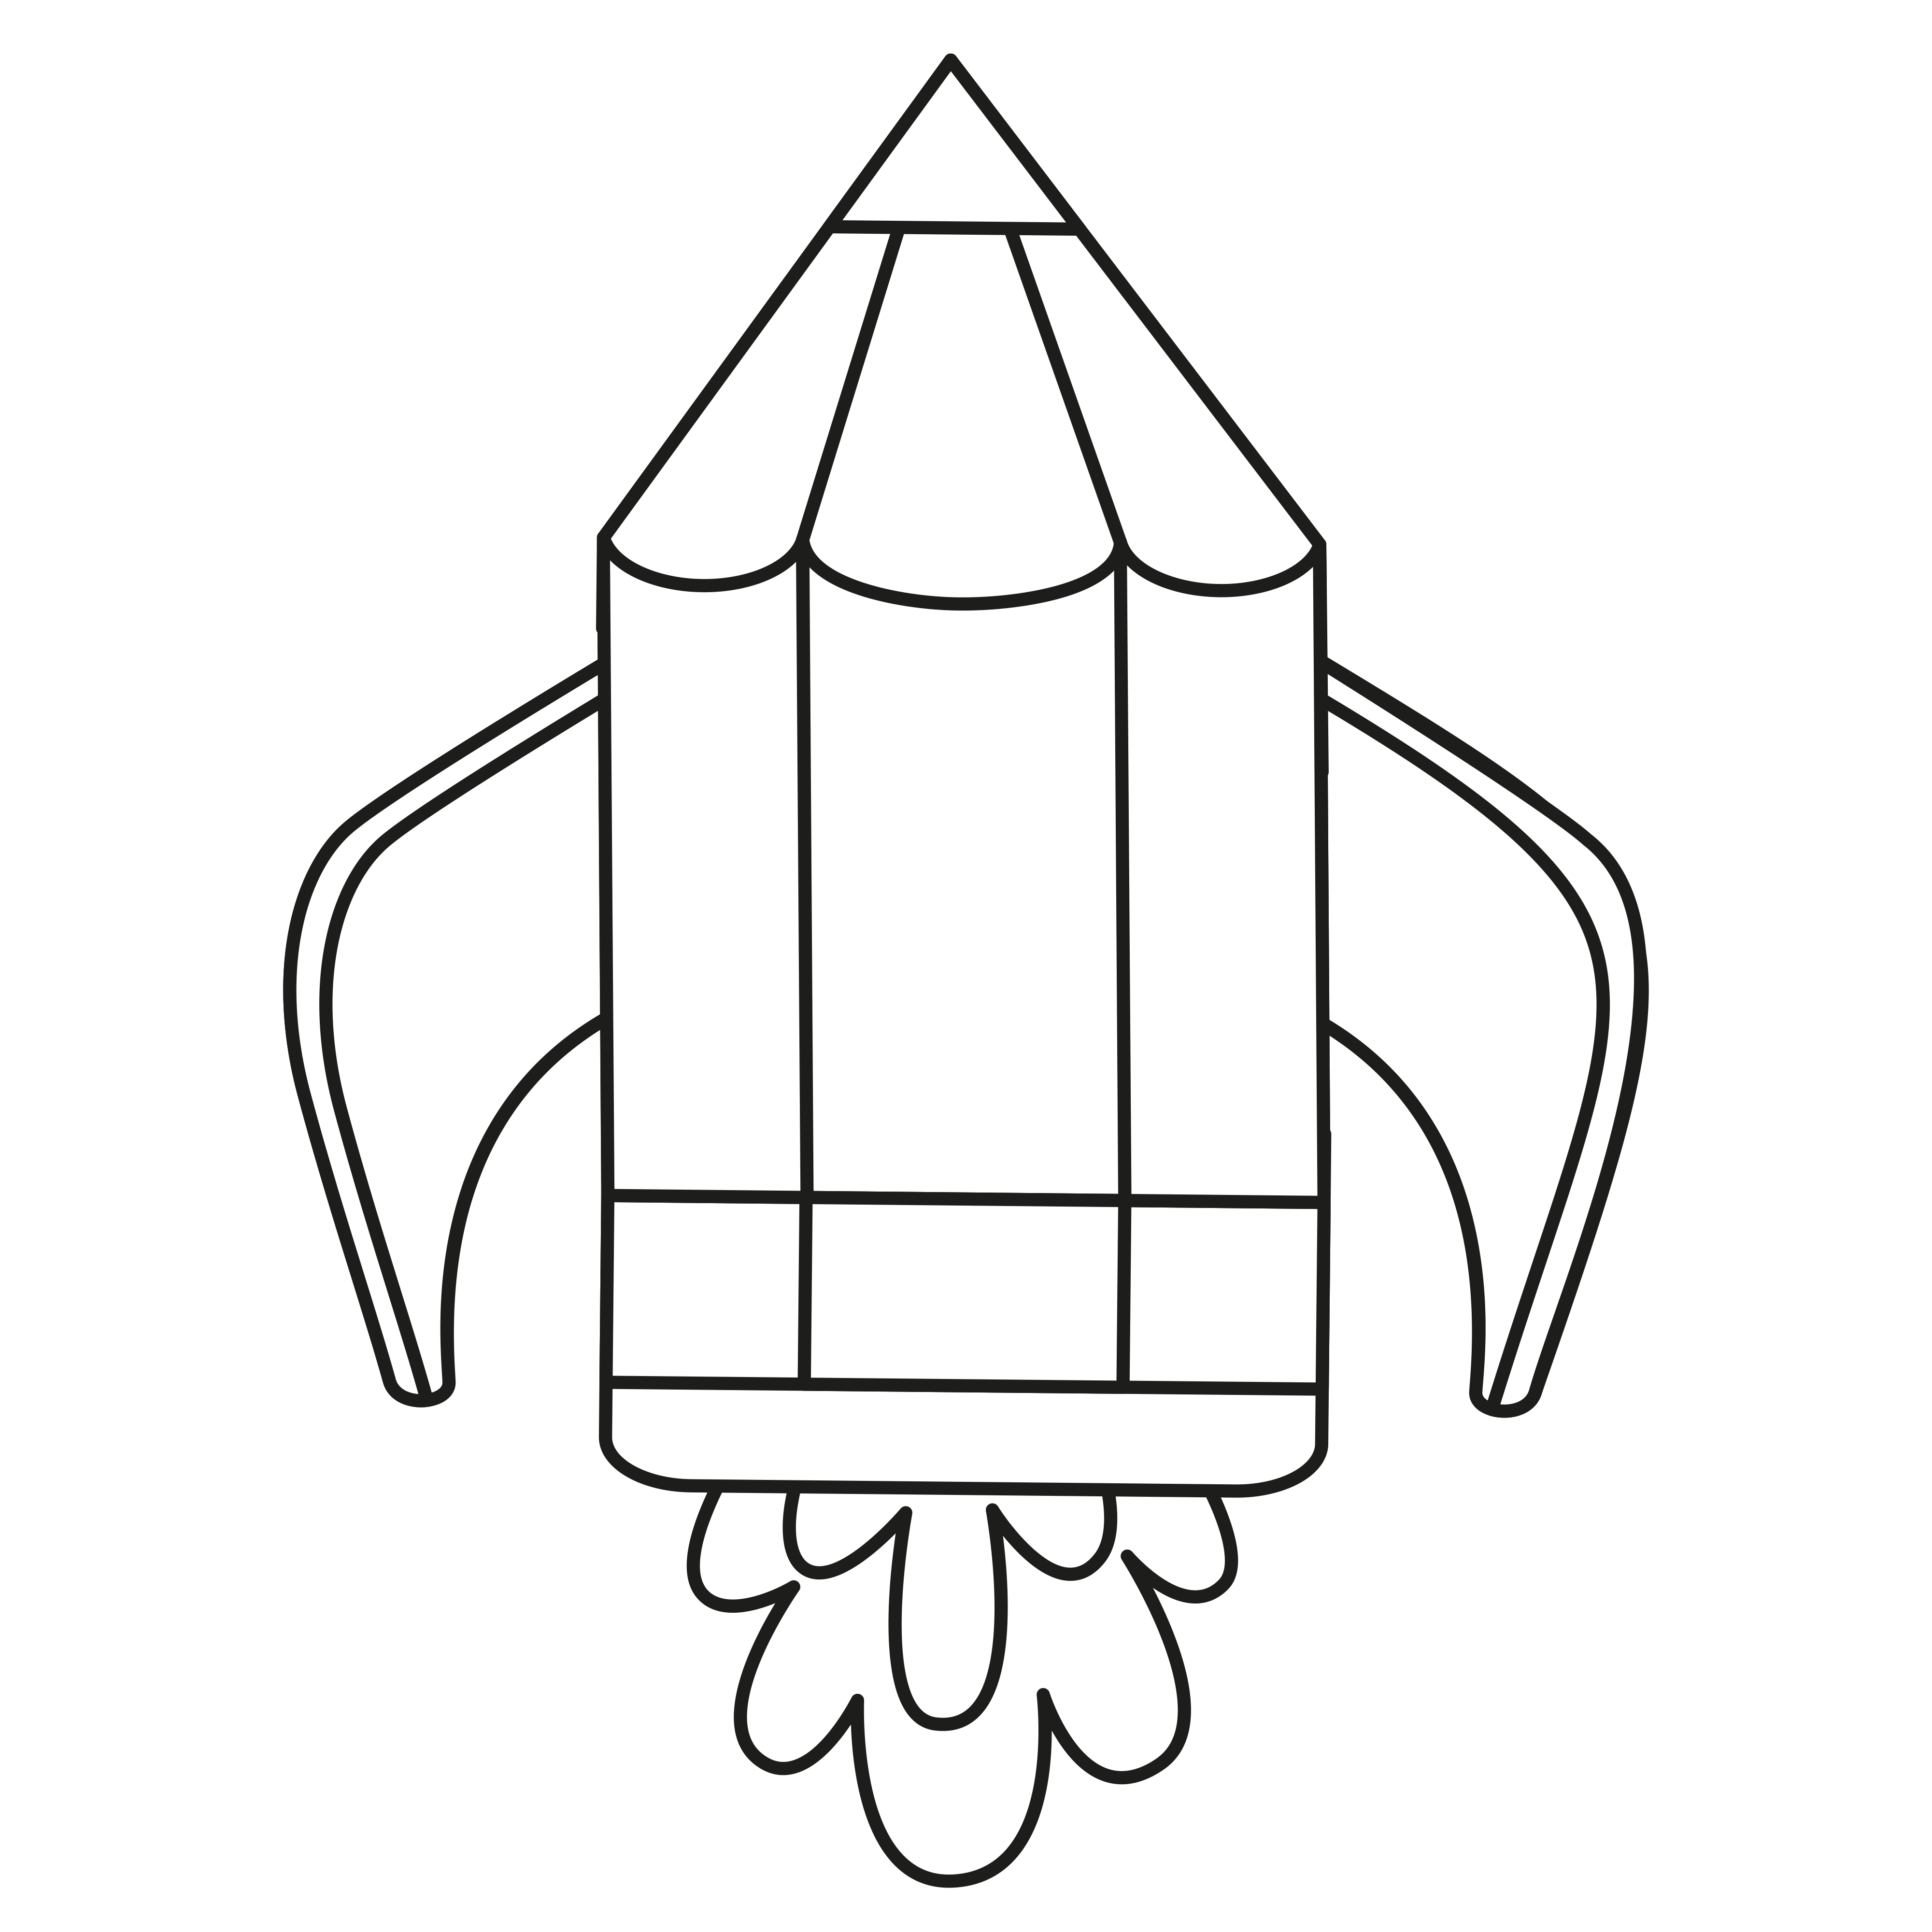 Раскраска игрушка космическая ракета в виде карандаша формата А4 в высоком качестве